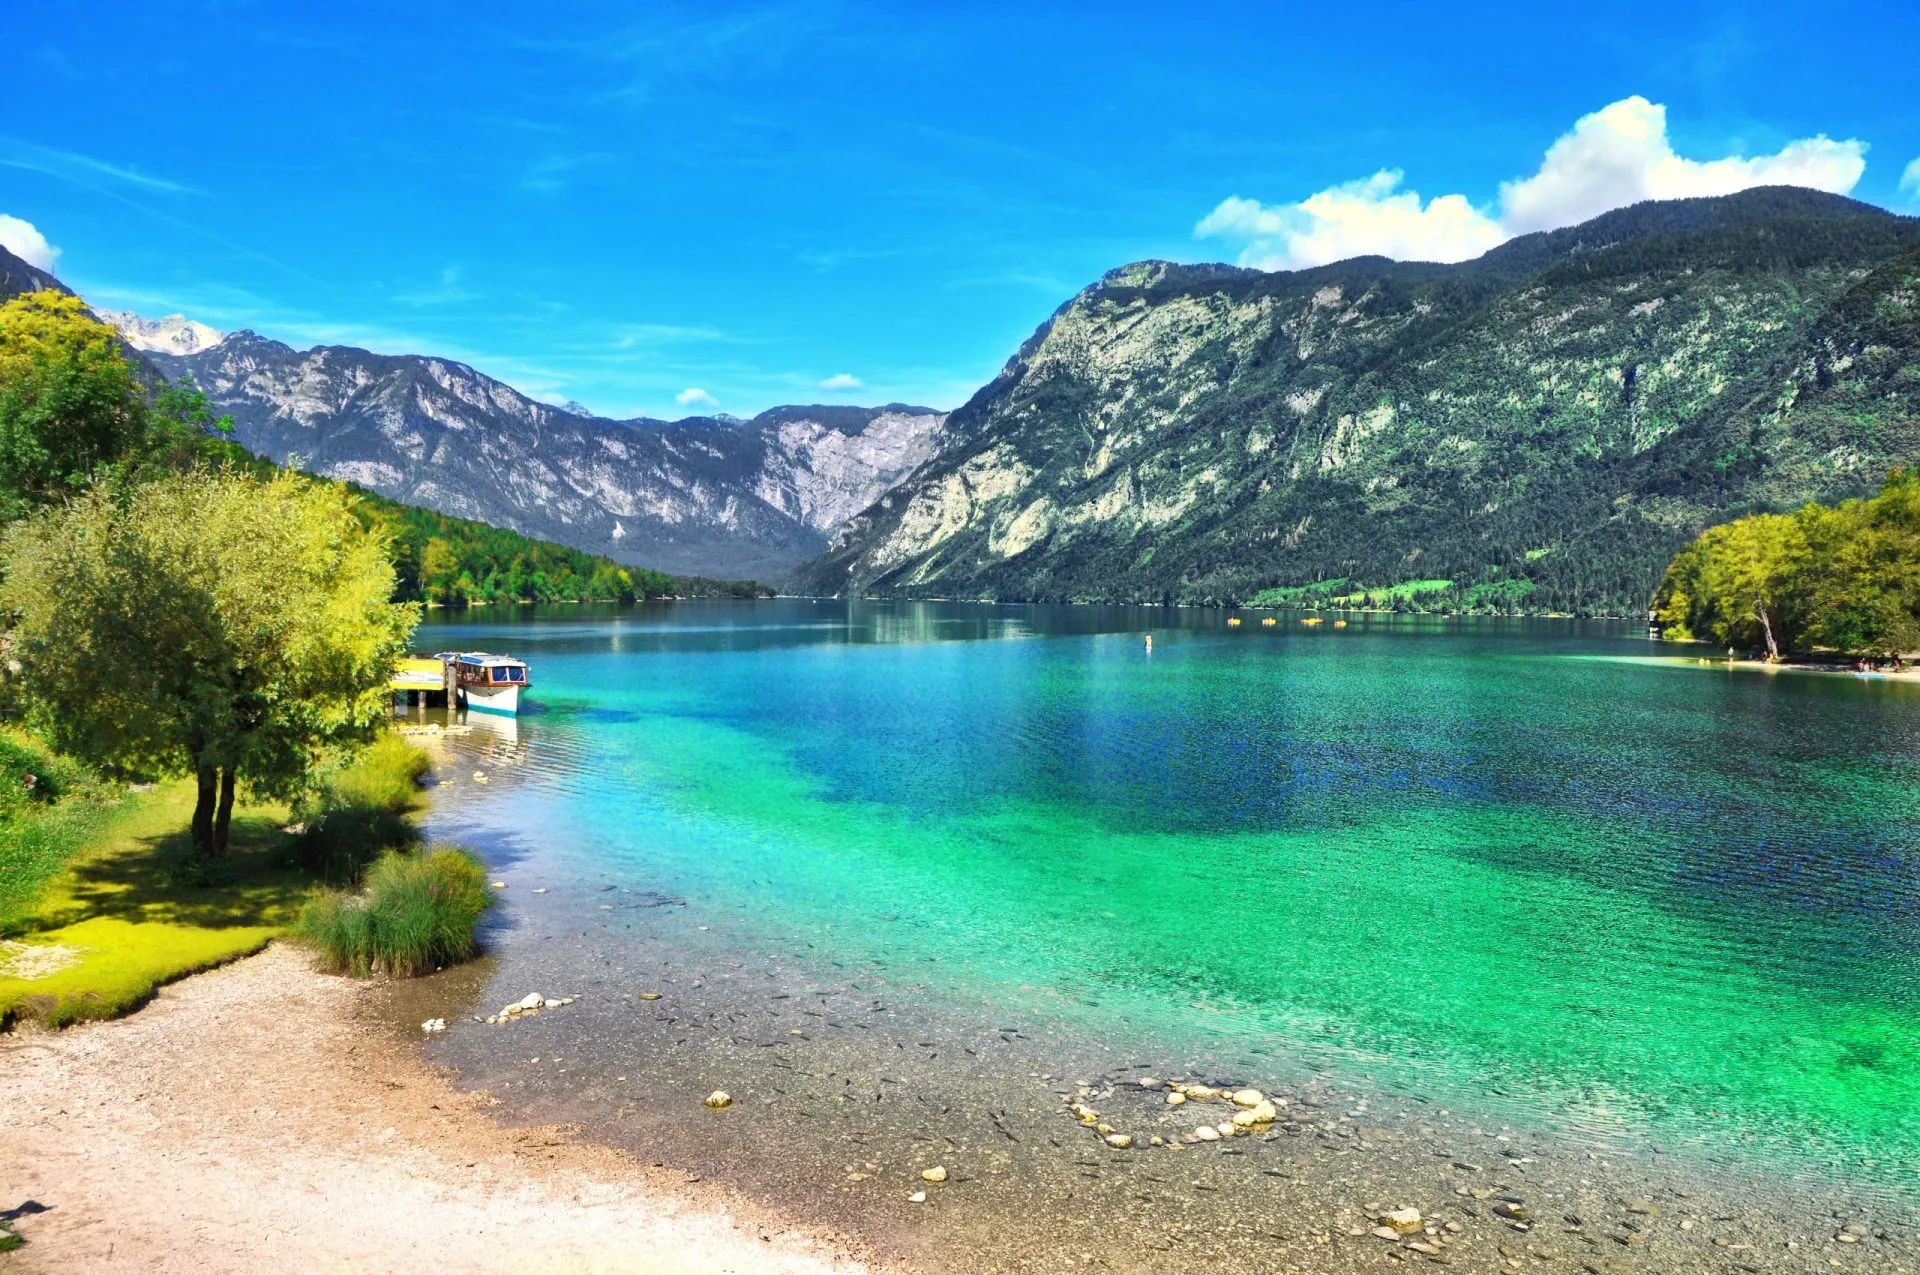 kaunis slovenian maisema Bohinj järvi turkoosi vesiTriglav kansallispuisto julian alpit sloveniaeurope stockpack adobe stock skaalattu